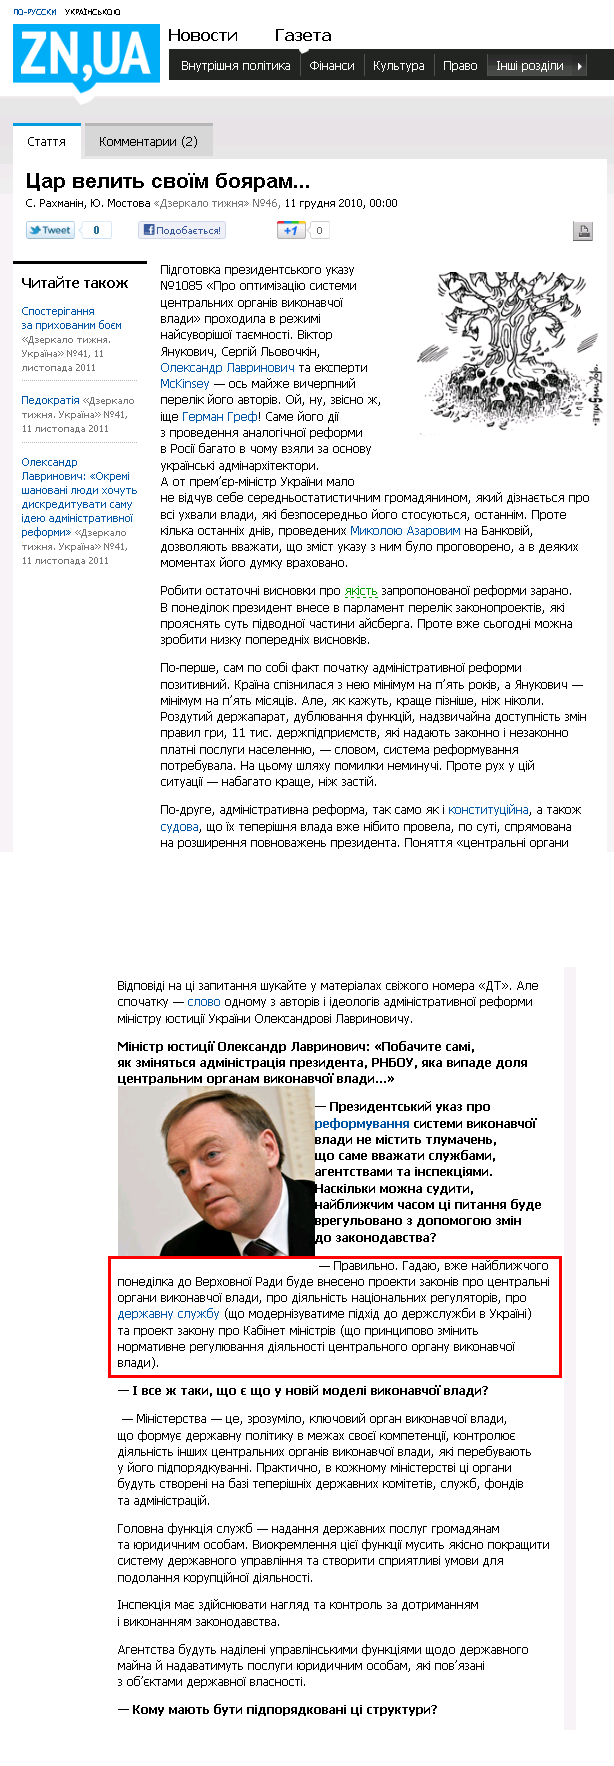 http://dt.ua/POLITICS/tsar_velit_svoyim_boyaram-61671.html